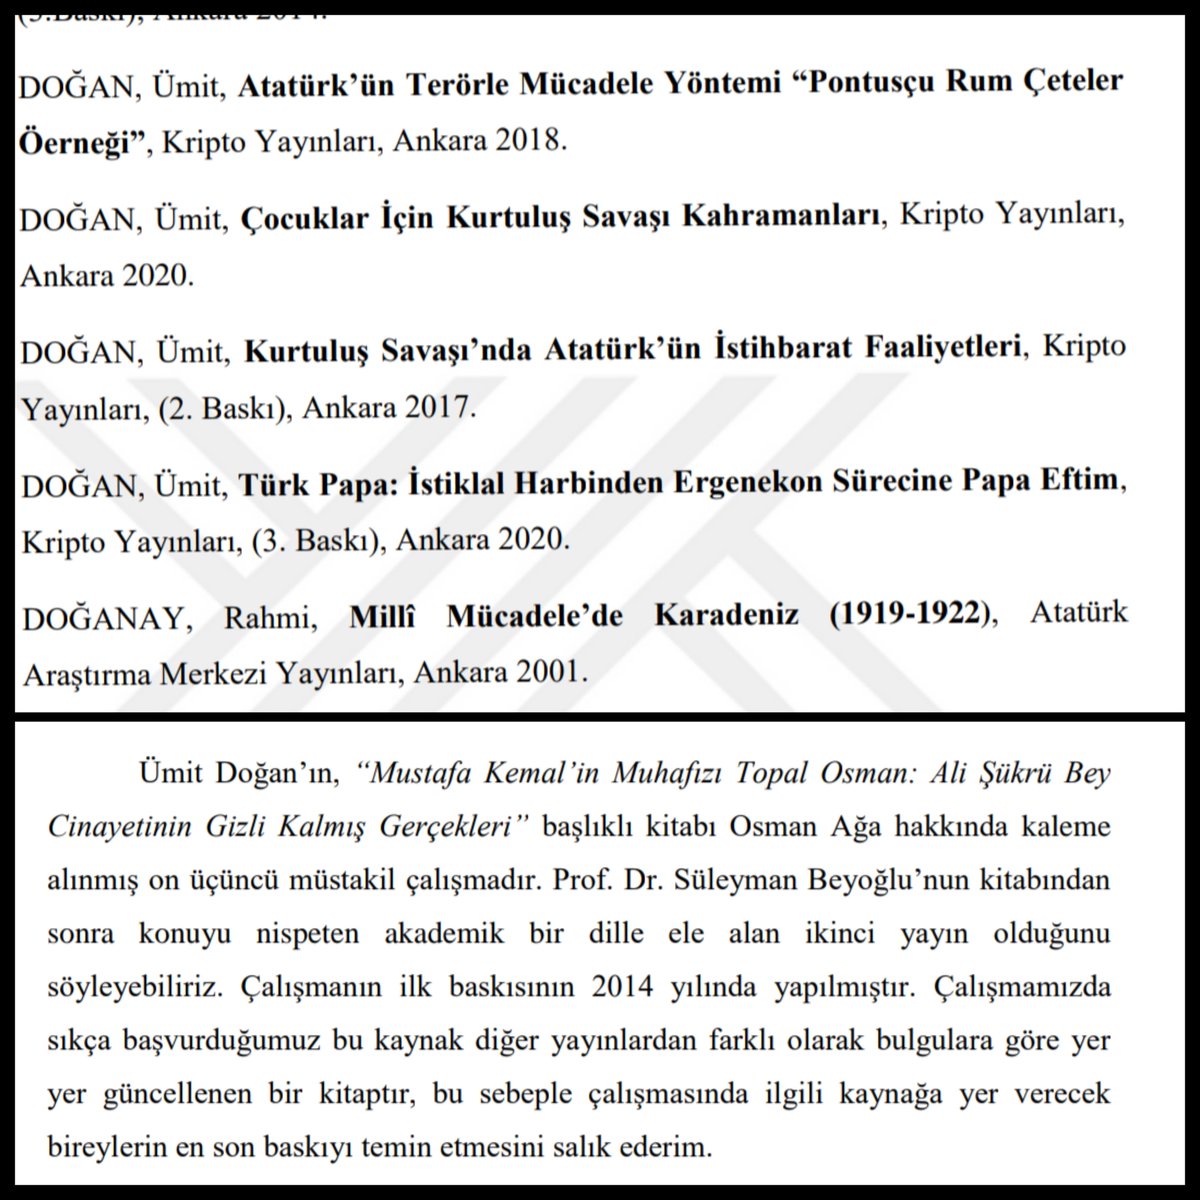 @sahinkaraca34 @HarpCografyasi @tsumut71 Ümit Doğan Hoca'nın, Topal Osman Ağa kitabı konu hakkında önemli bir çalışmadır. İlaveten konuyla ilgilenen bireylerin diğer çalışmalarını da okumasını salık ederim.